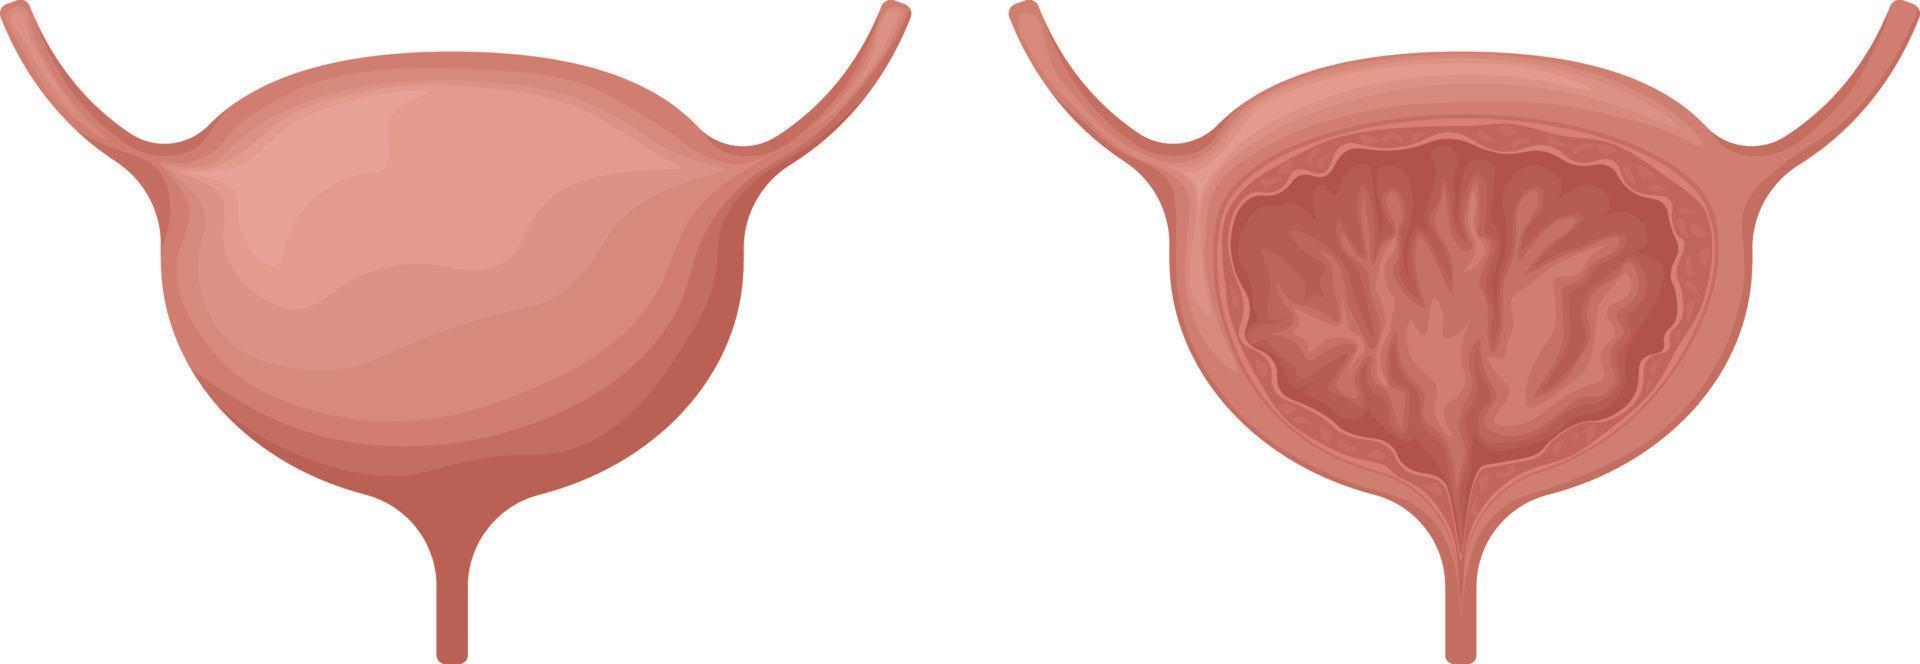 el vejiga. anatómico imagen de el vejiga. humano interno órganos urinario sistema en el sección. vector ilustración aislado en un blanco antecedentes